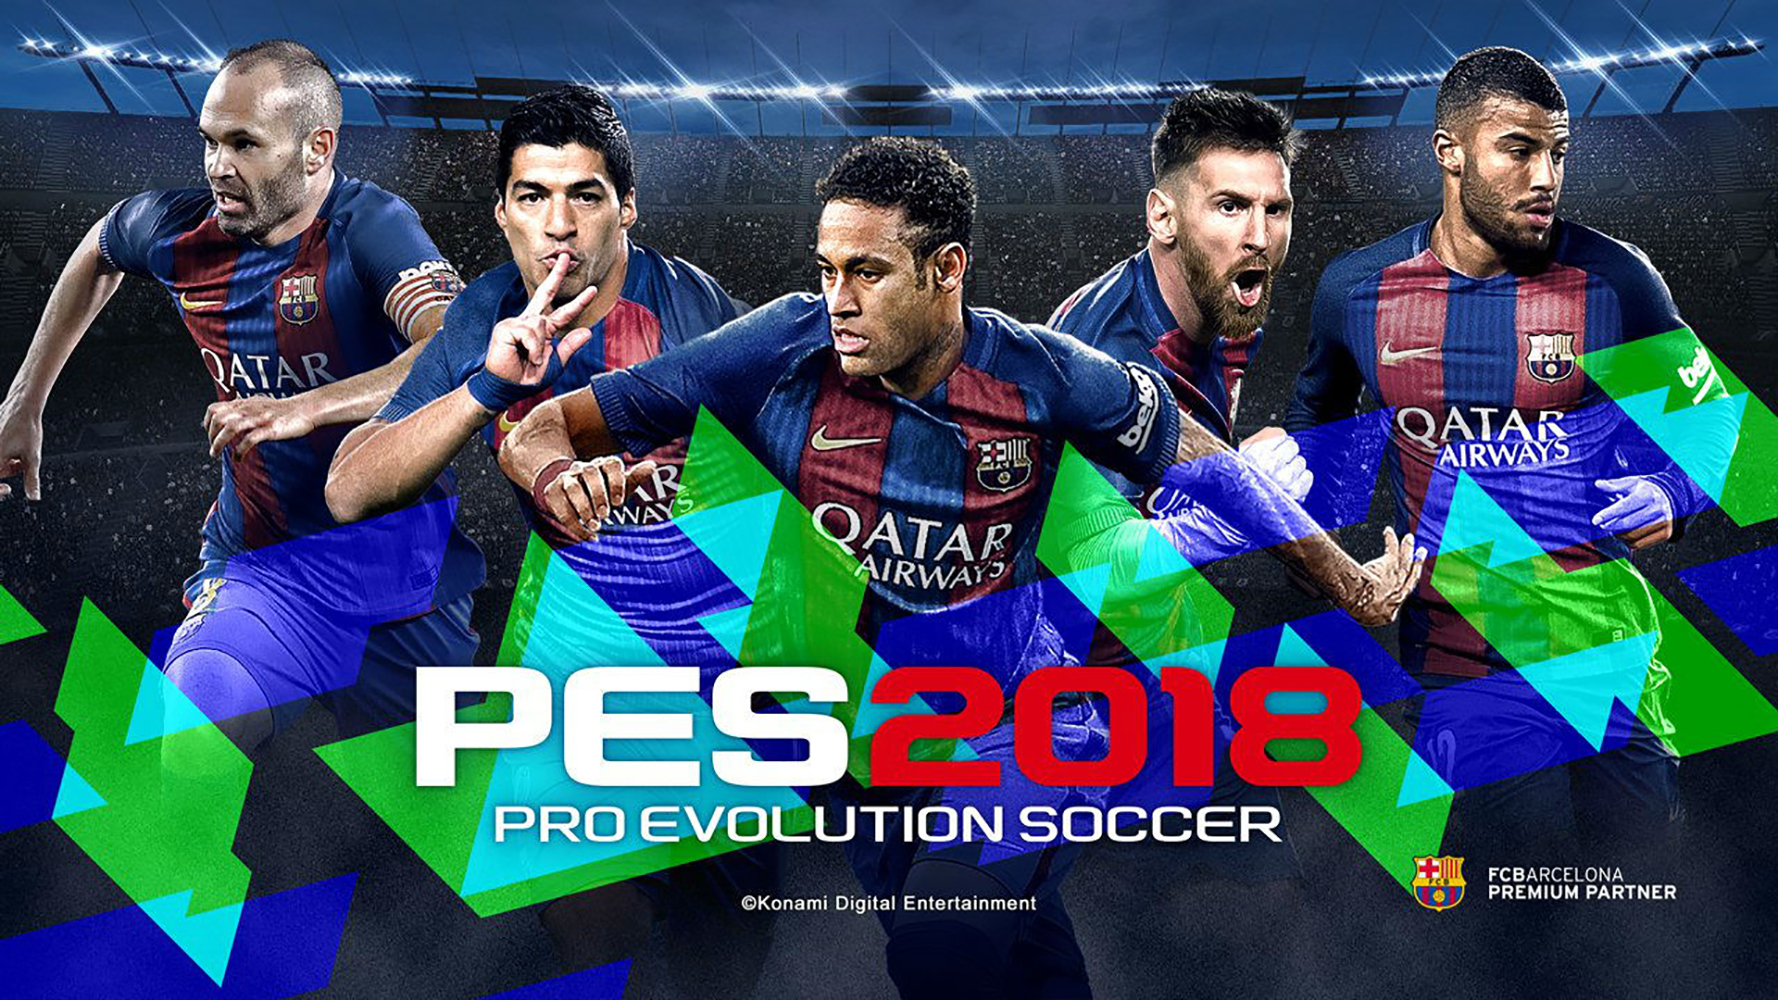 Descargar fondos de escritorio de Pro Evolution Soccer 2018 HD